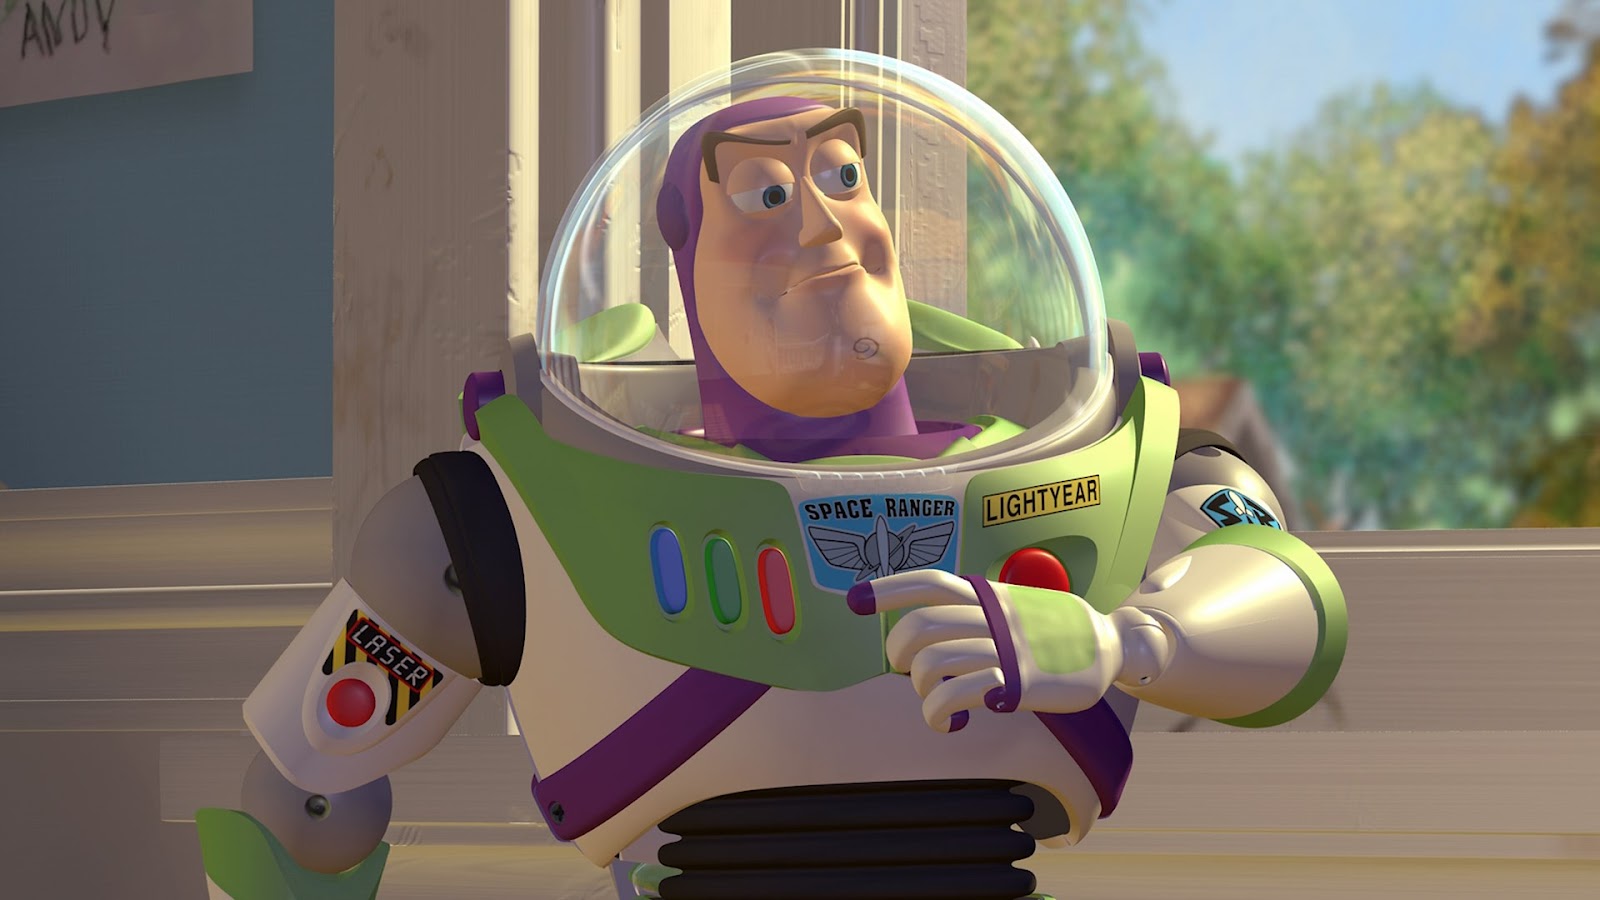 Mas allá del infinito: Buzz y el viaje hacia Lightyear (2022) 1080p WEB-DL Latino